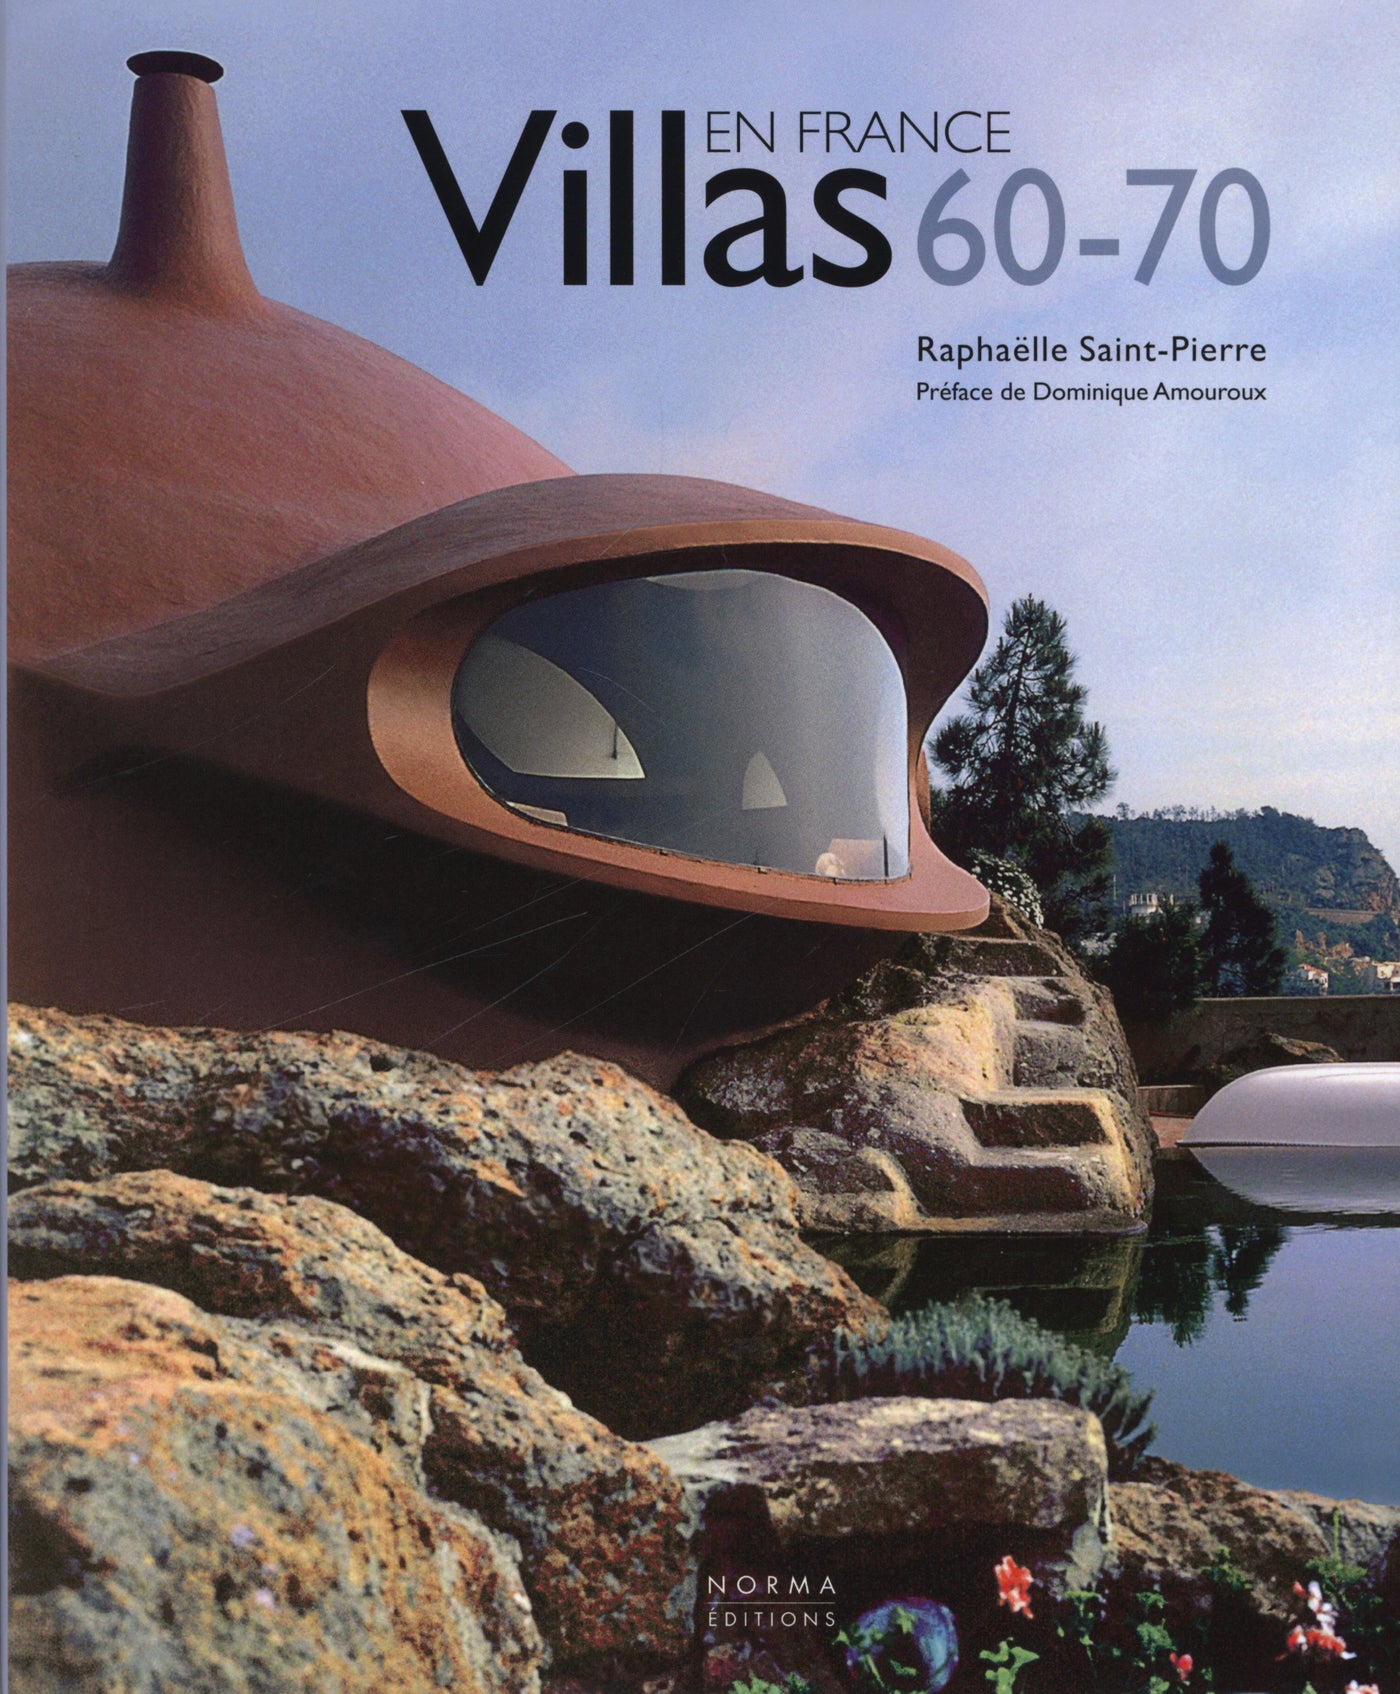 Book: VILLAS 60-70 EN FRANCE